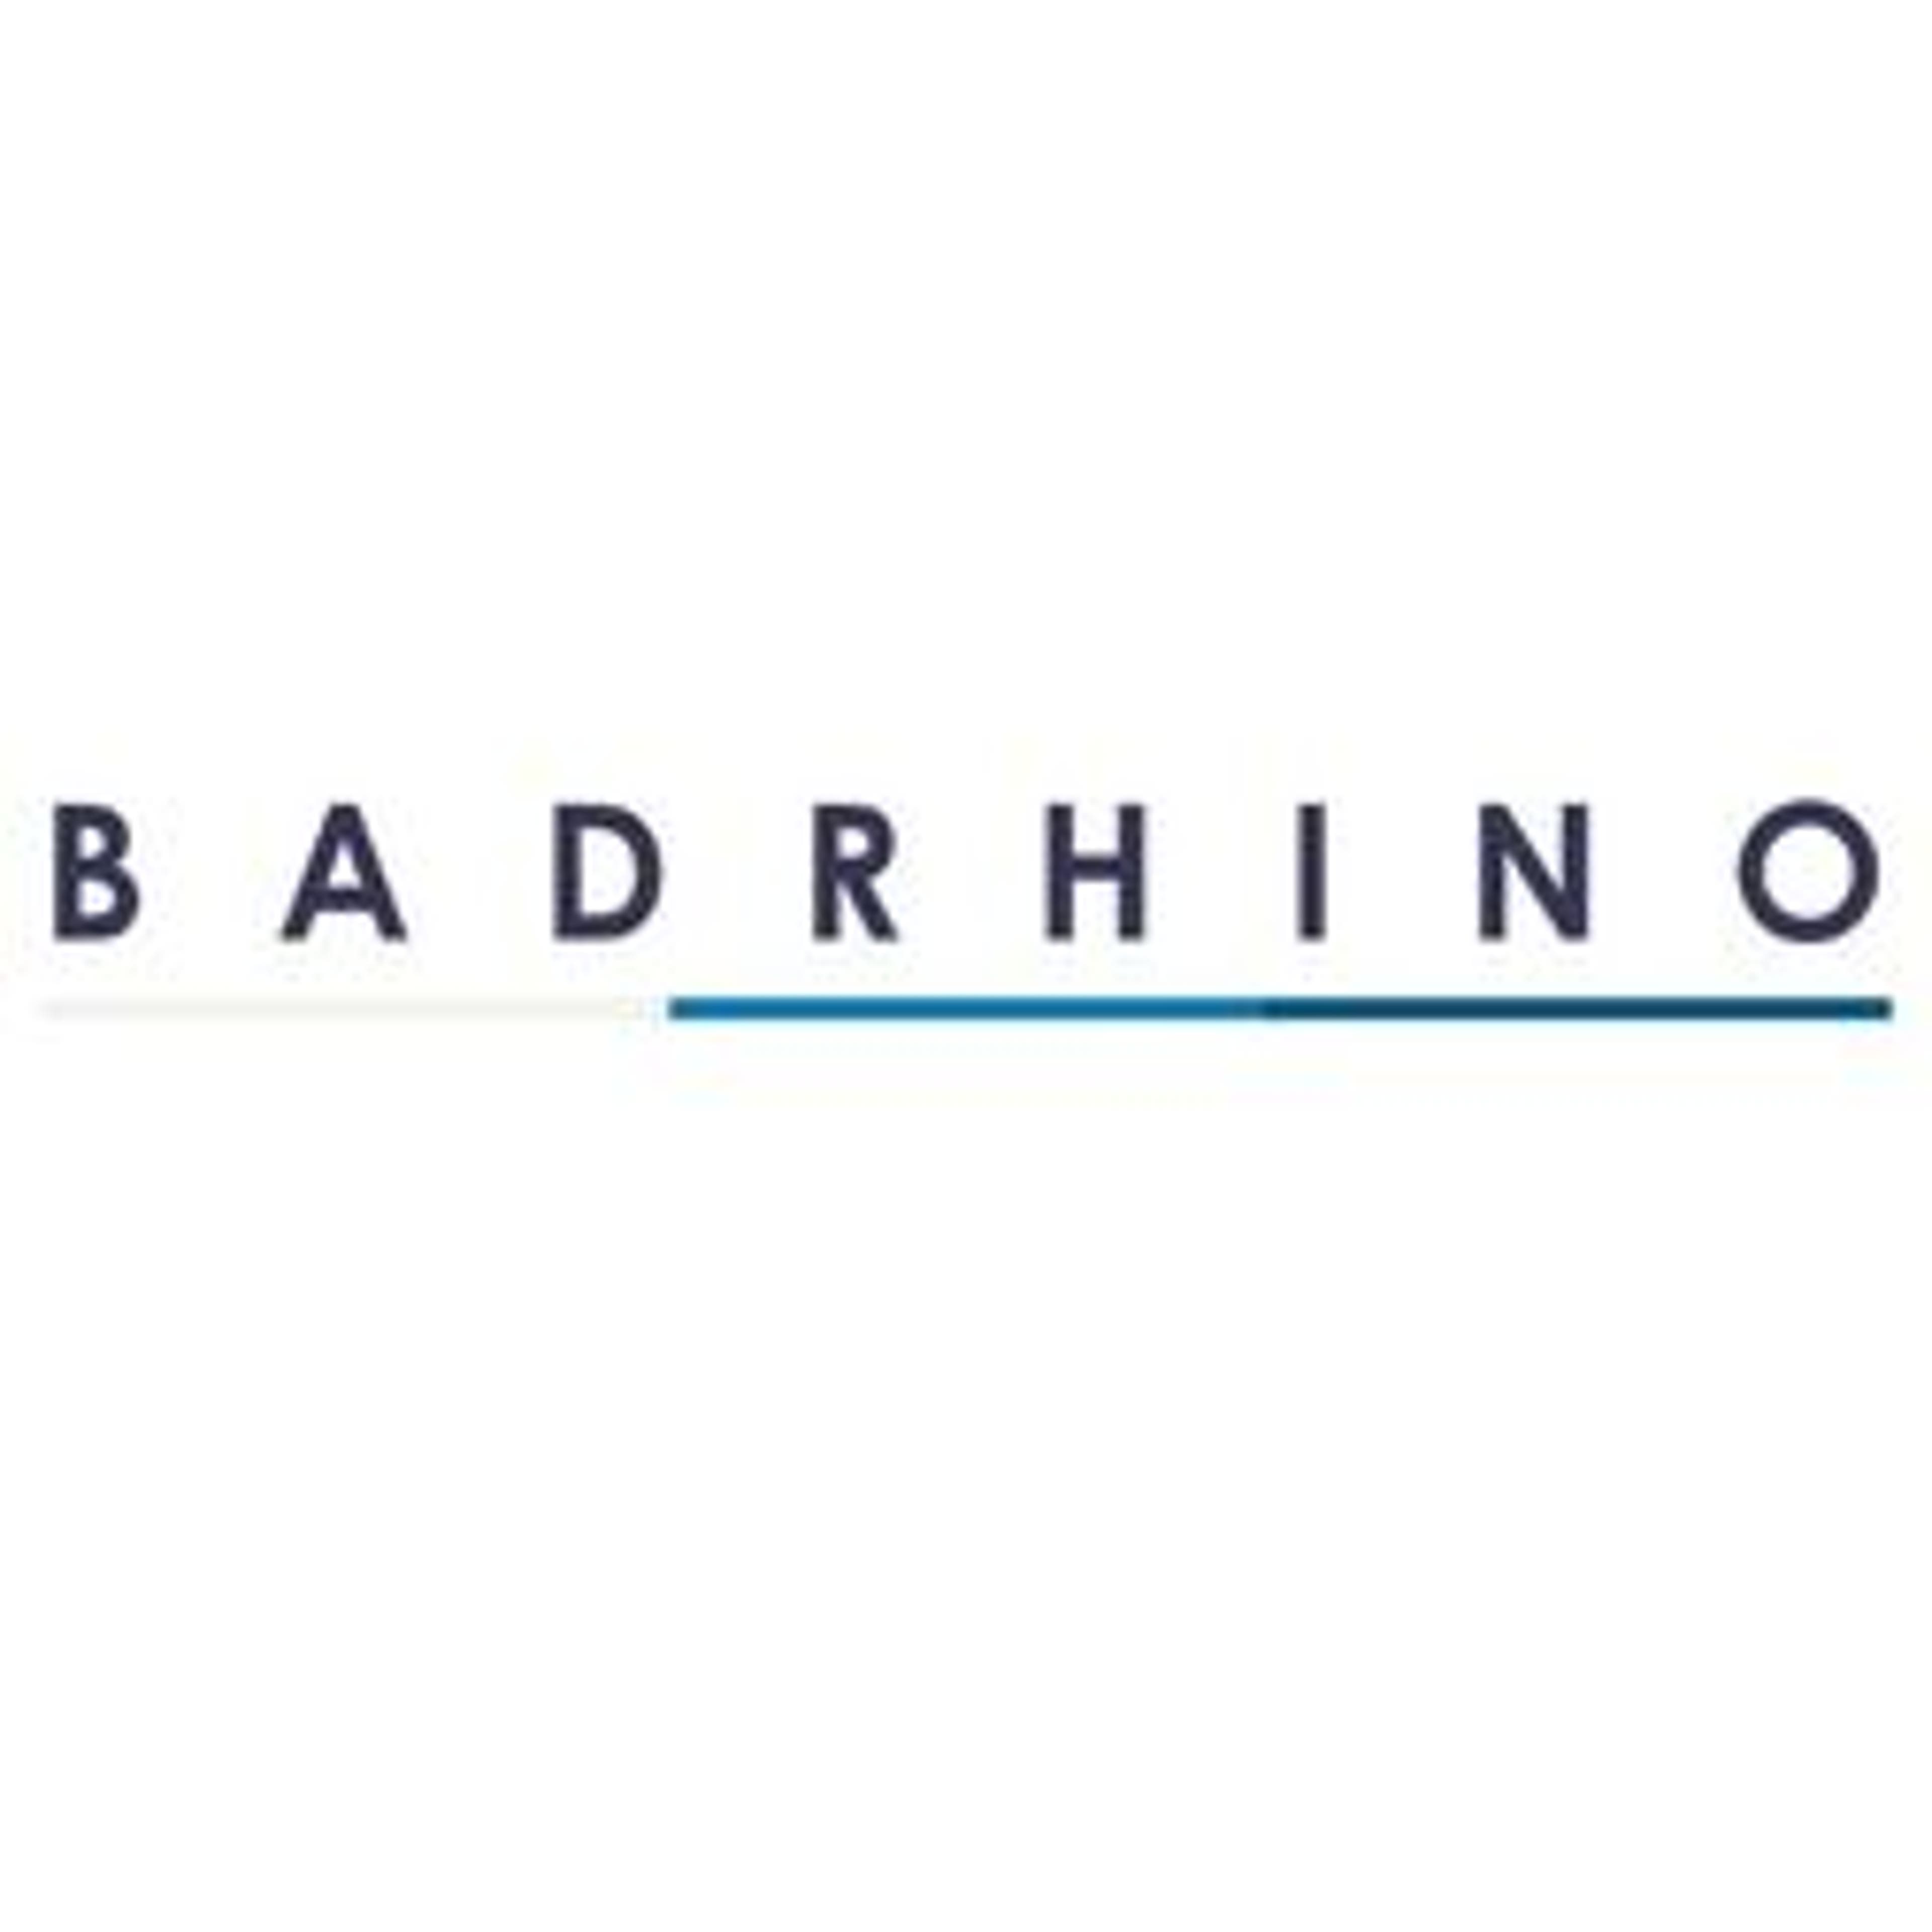  BadRhino 